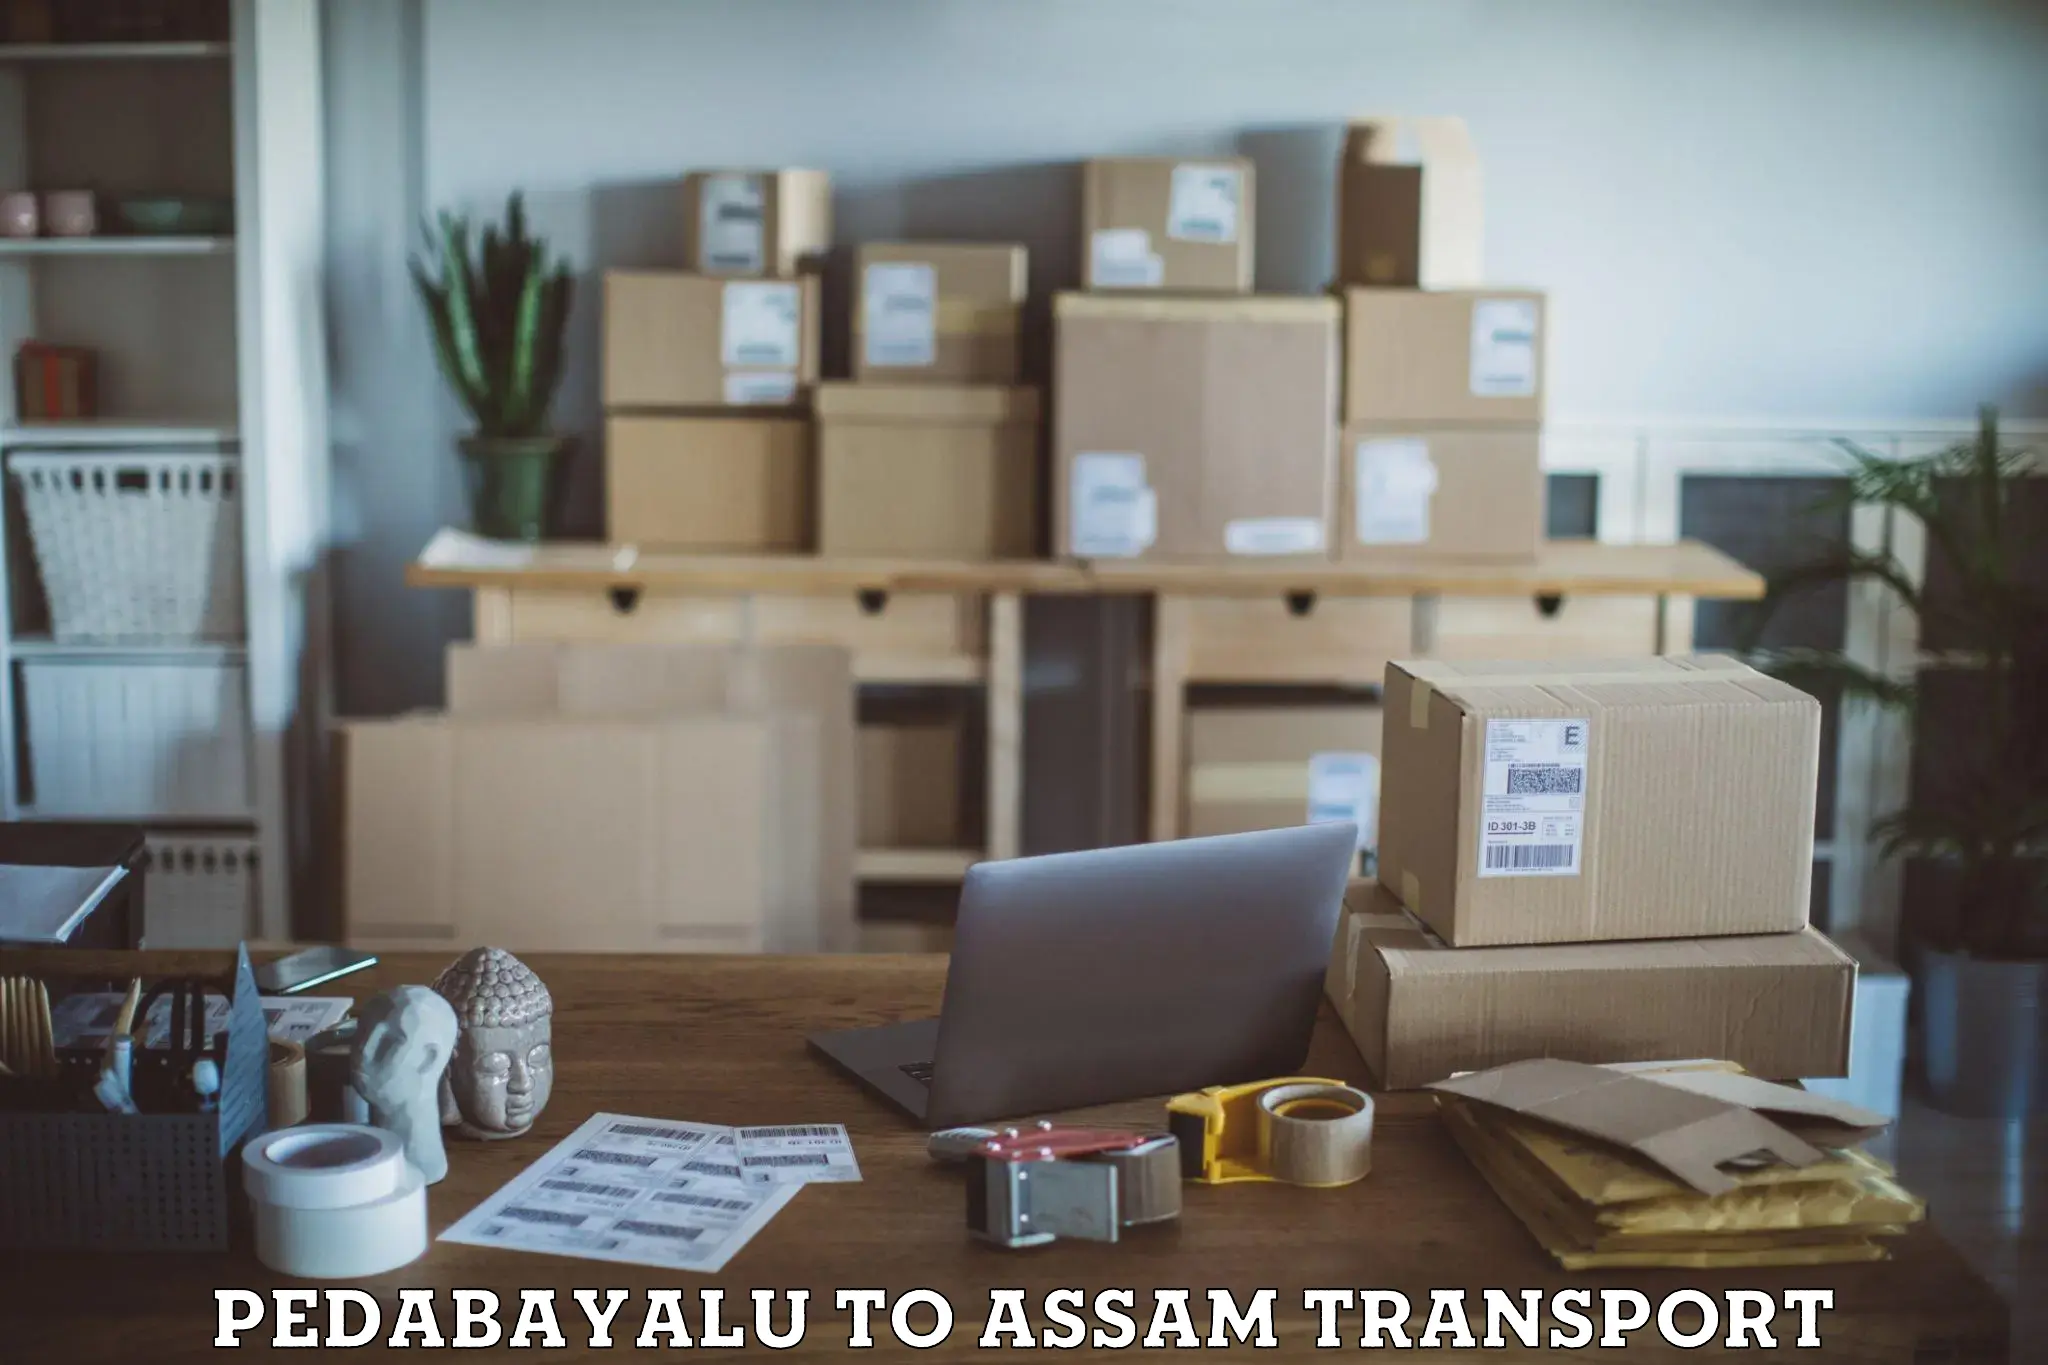 Daily parcel service transport Pedabayalu to Nazira